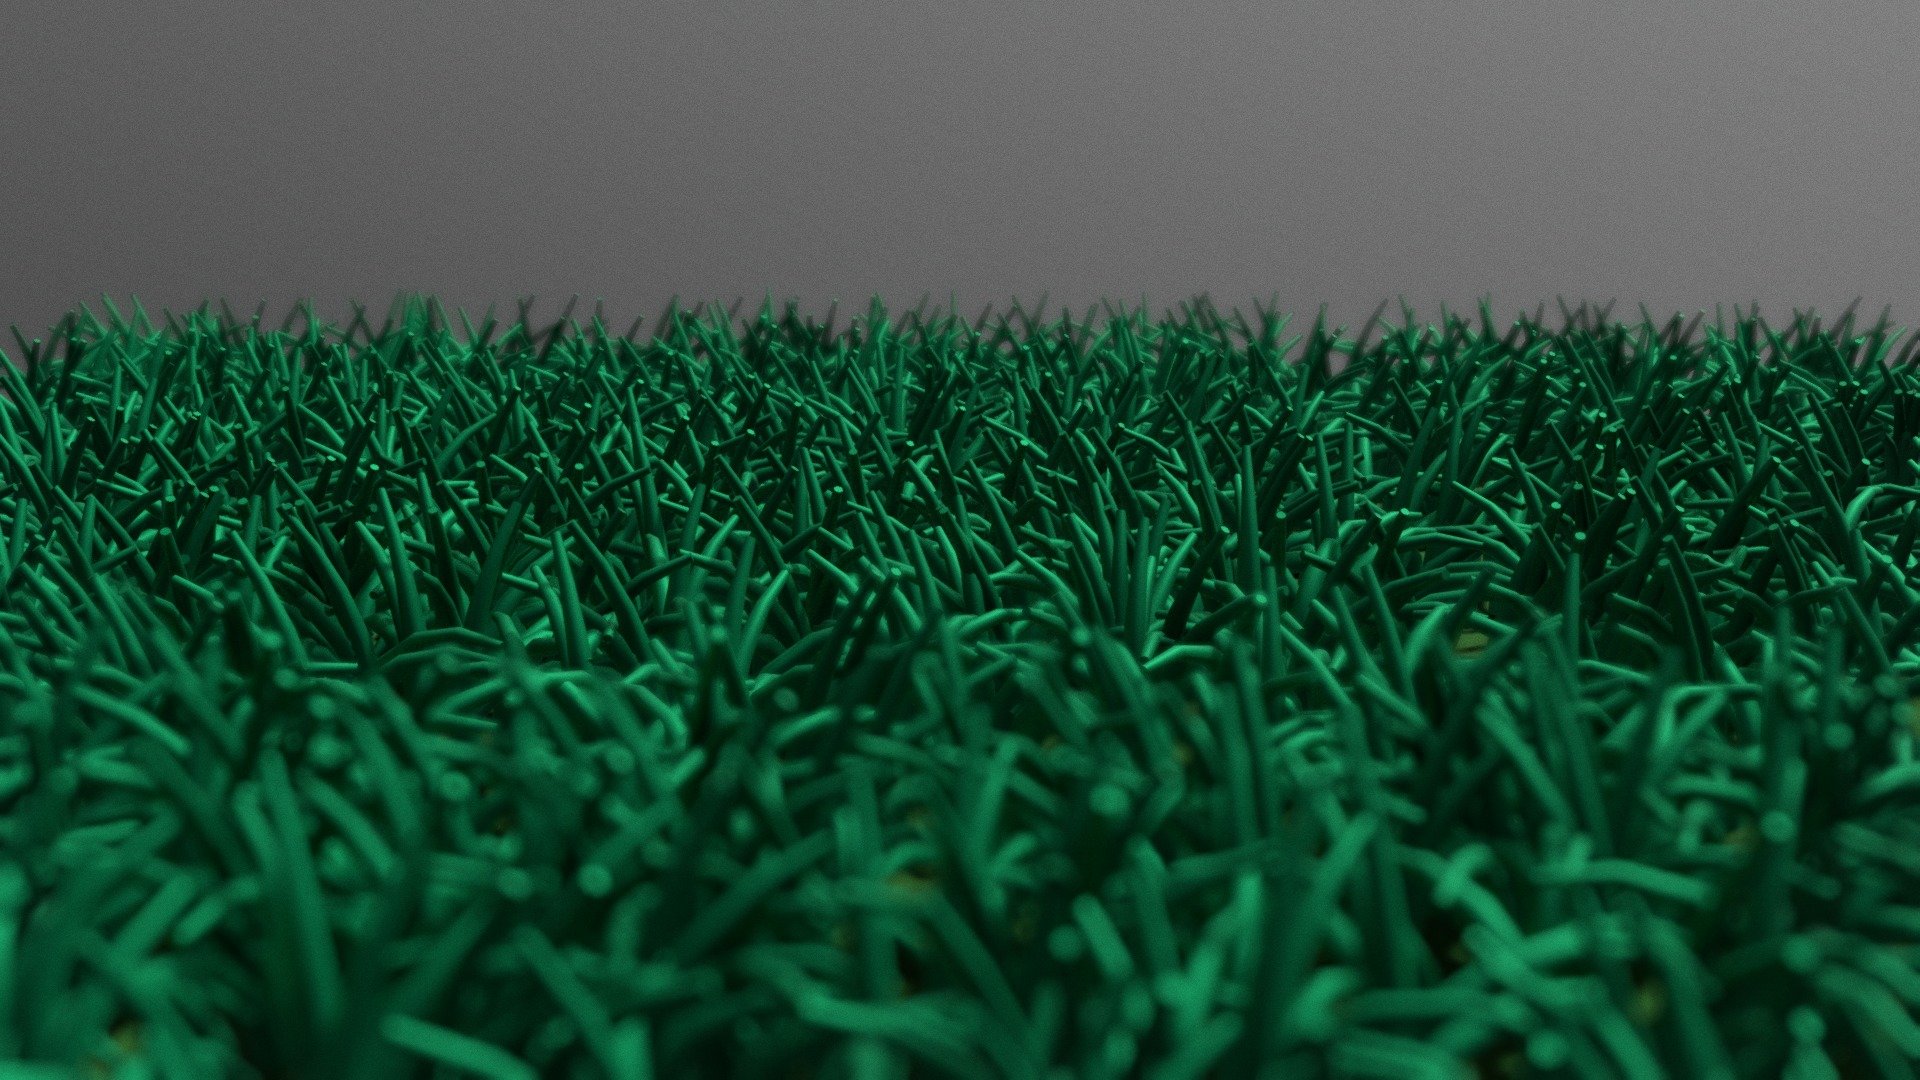 grass 3d model free download blender